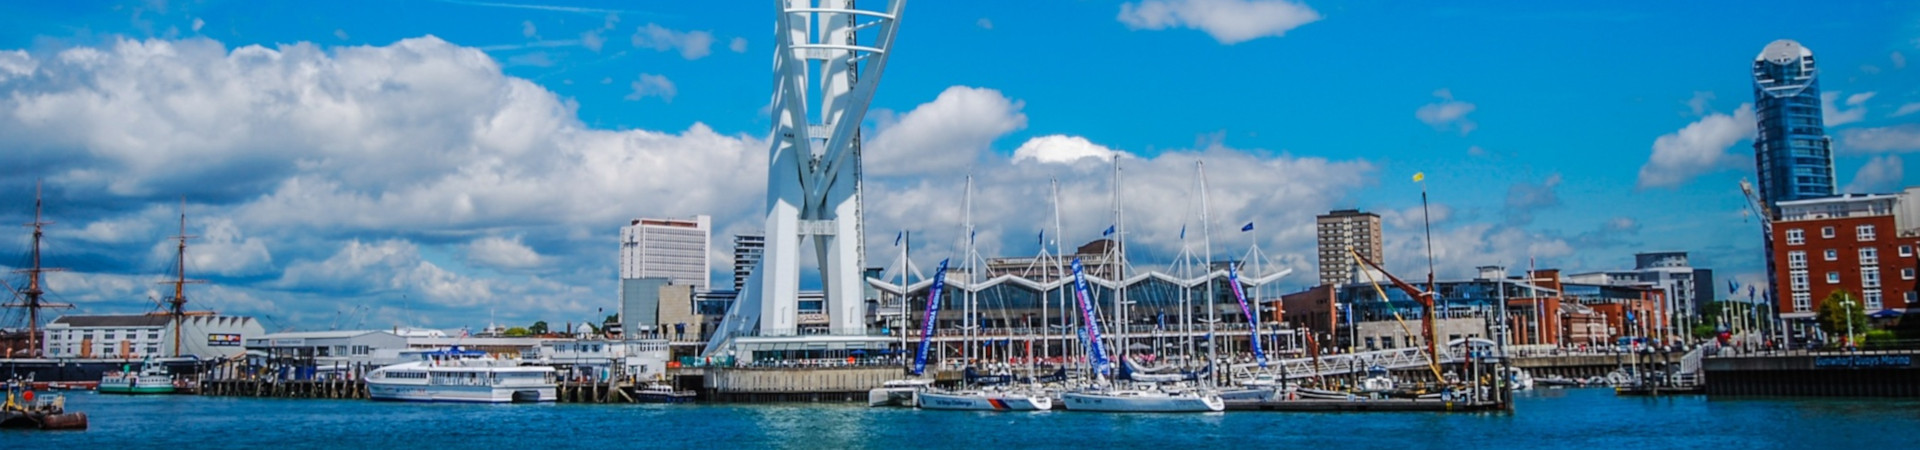 Imatge recurs del port de destinació Portsmouth per a la ruta en ferry Cherbourg-Octeville - Portsmouth